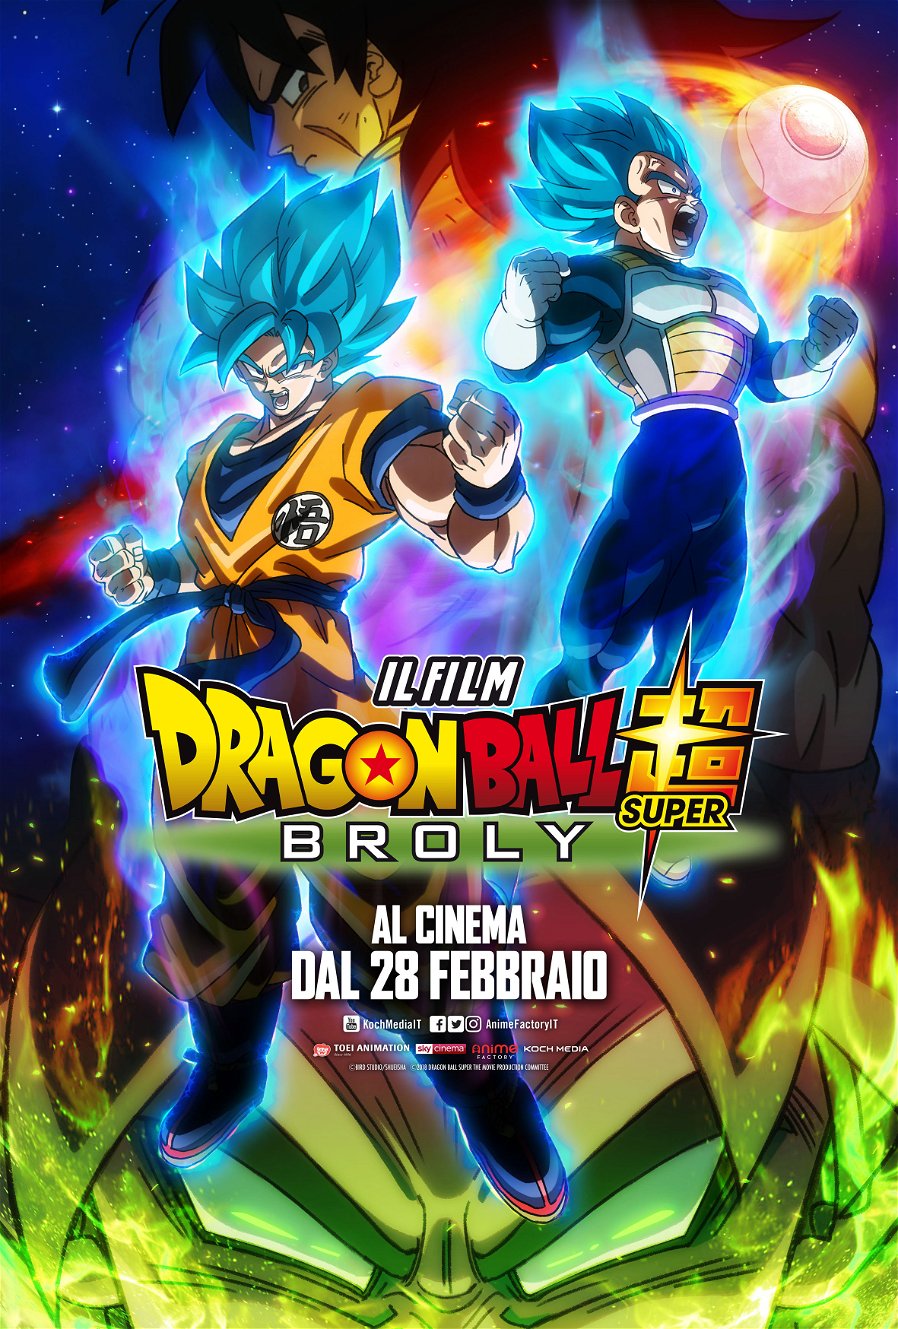 Immagine di Dragon Ball Super: Broly da oggi al cinema in Italia